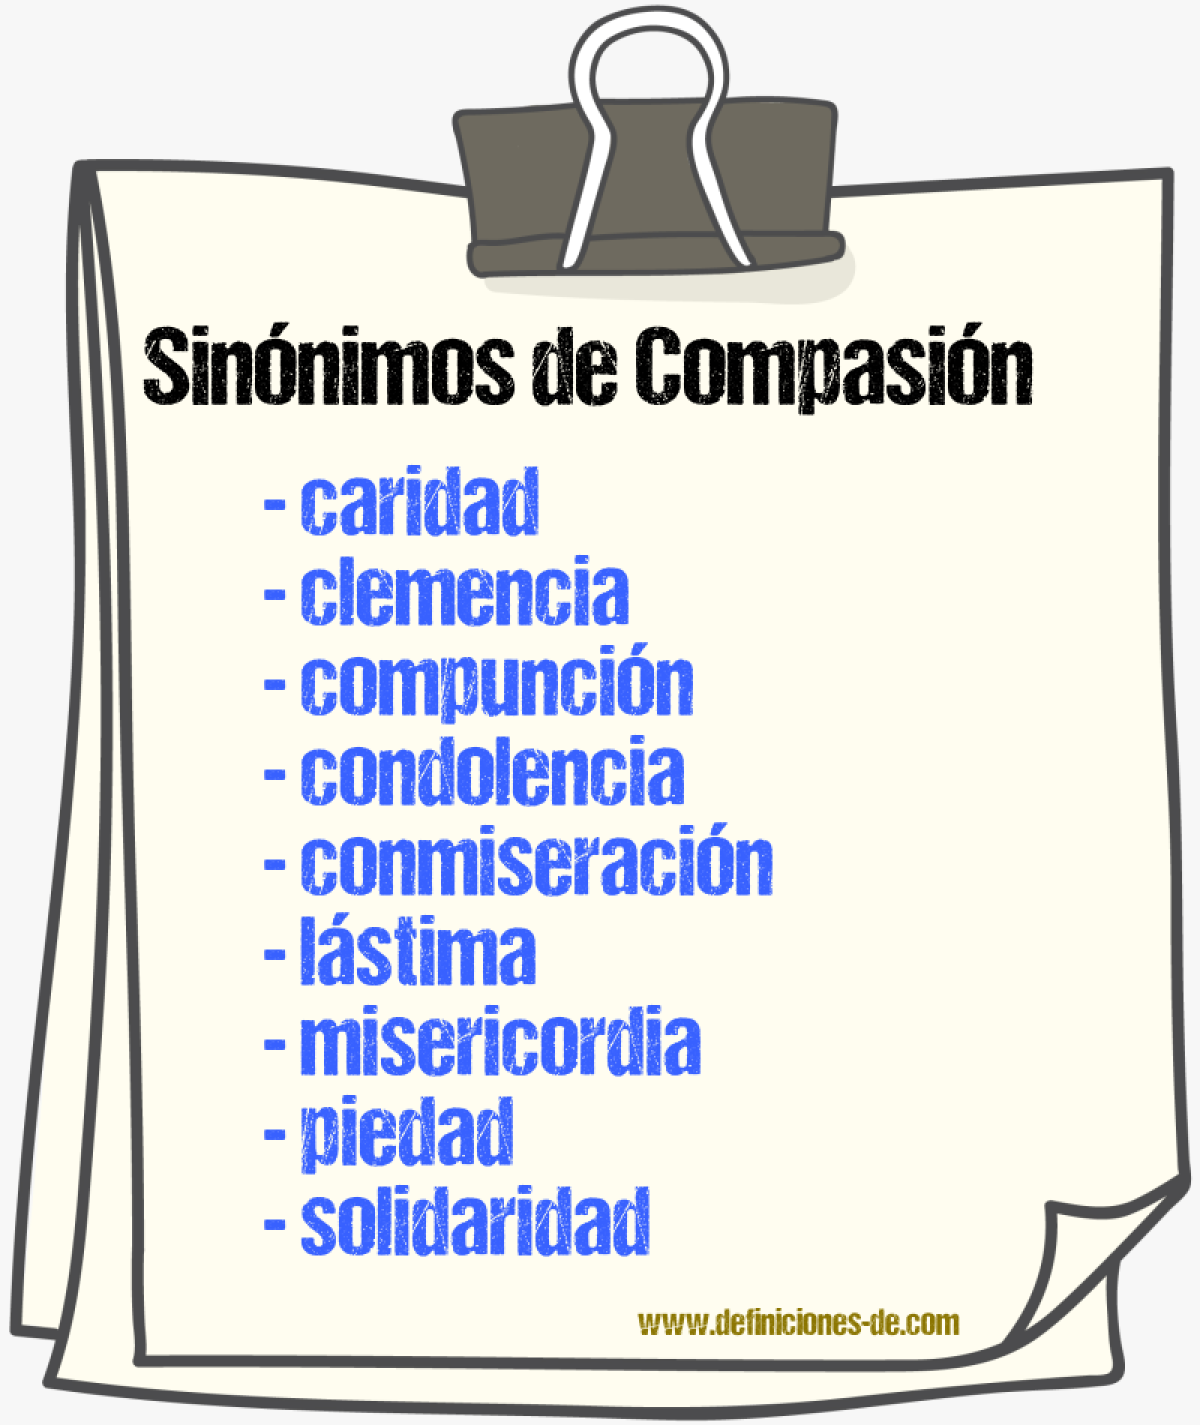 Sinónimos de compasión